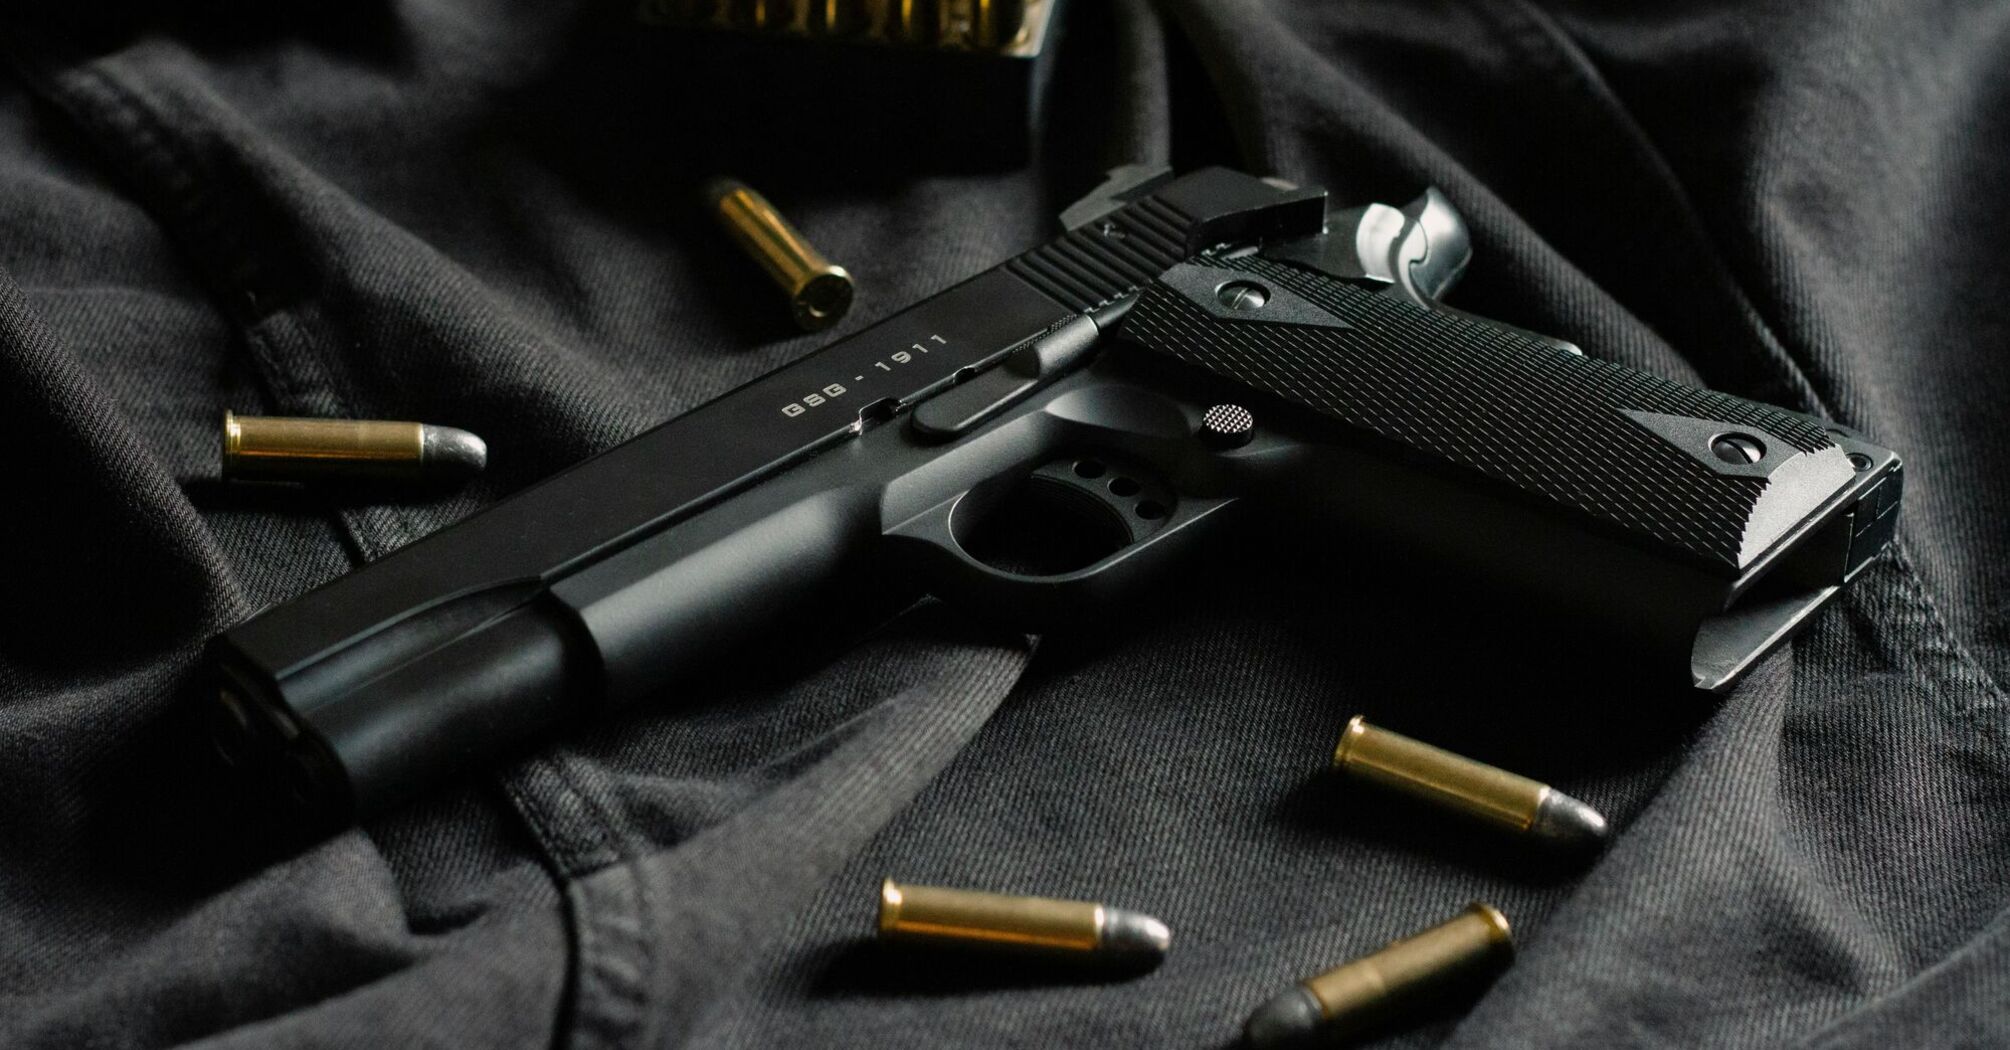 Black handgun with ammunition on dark fabric